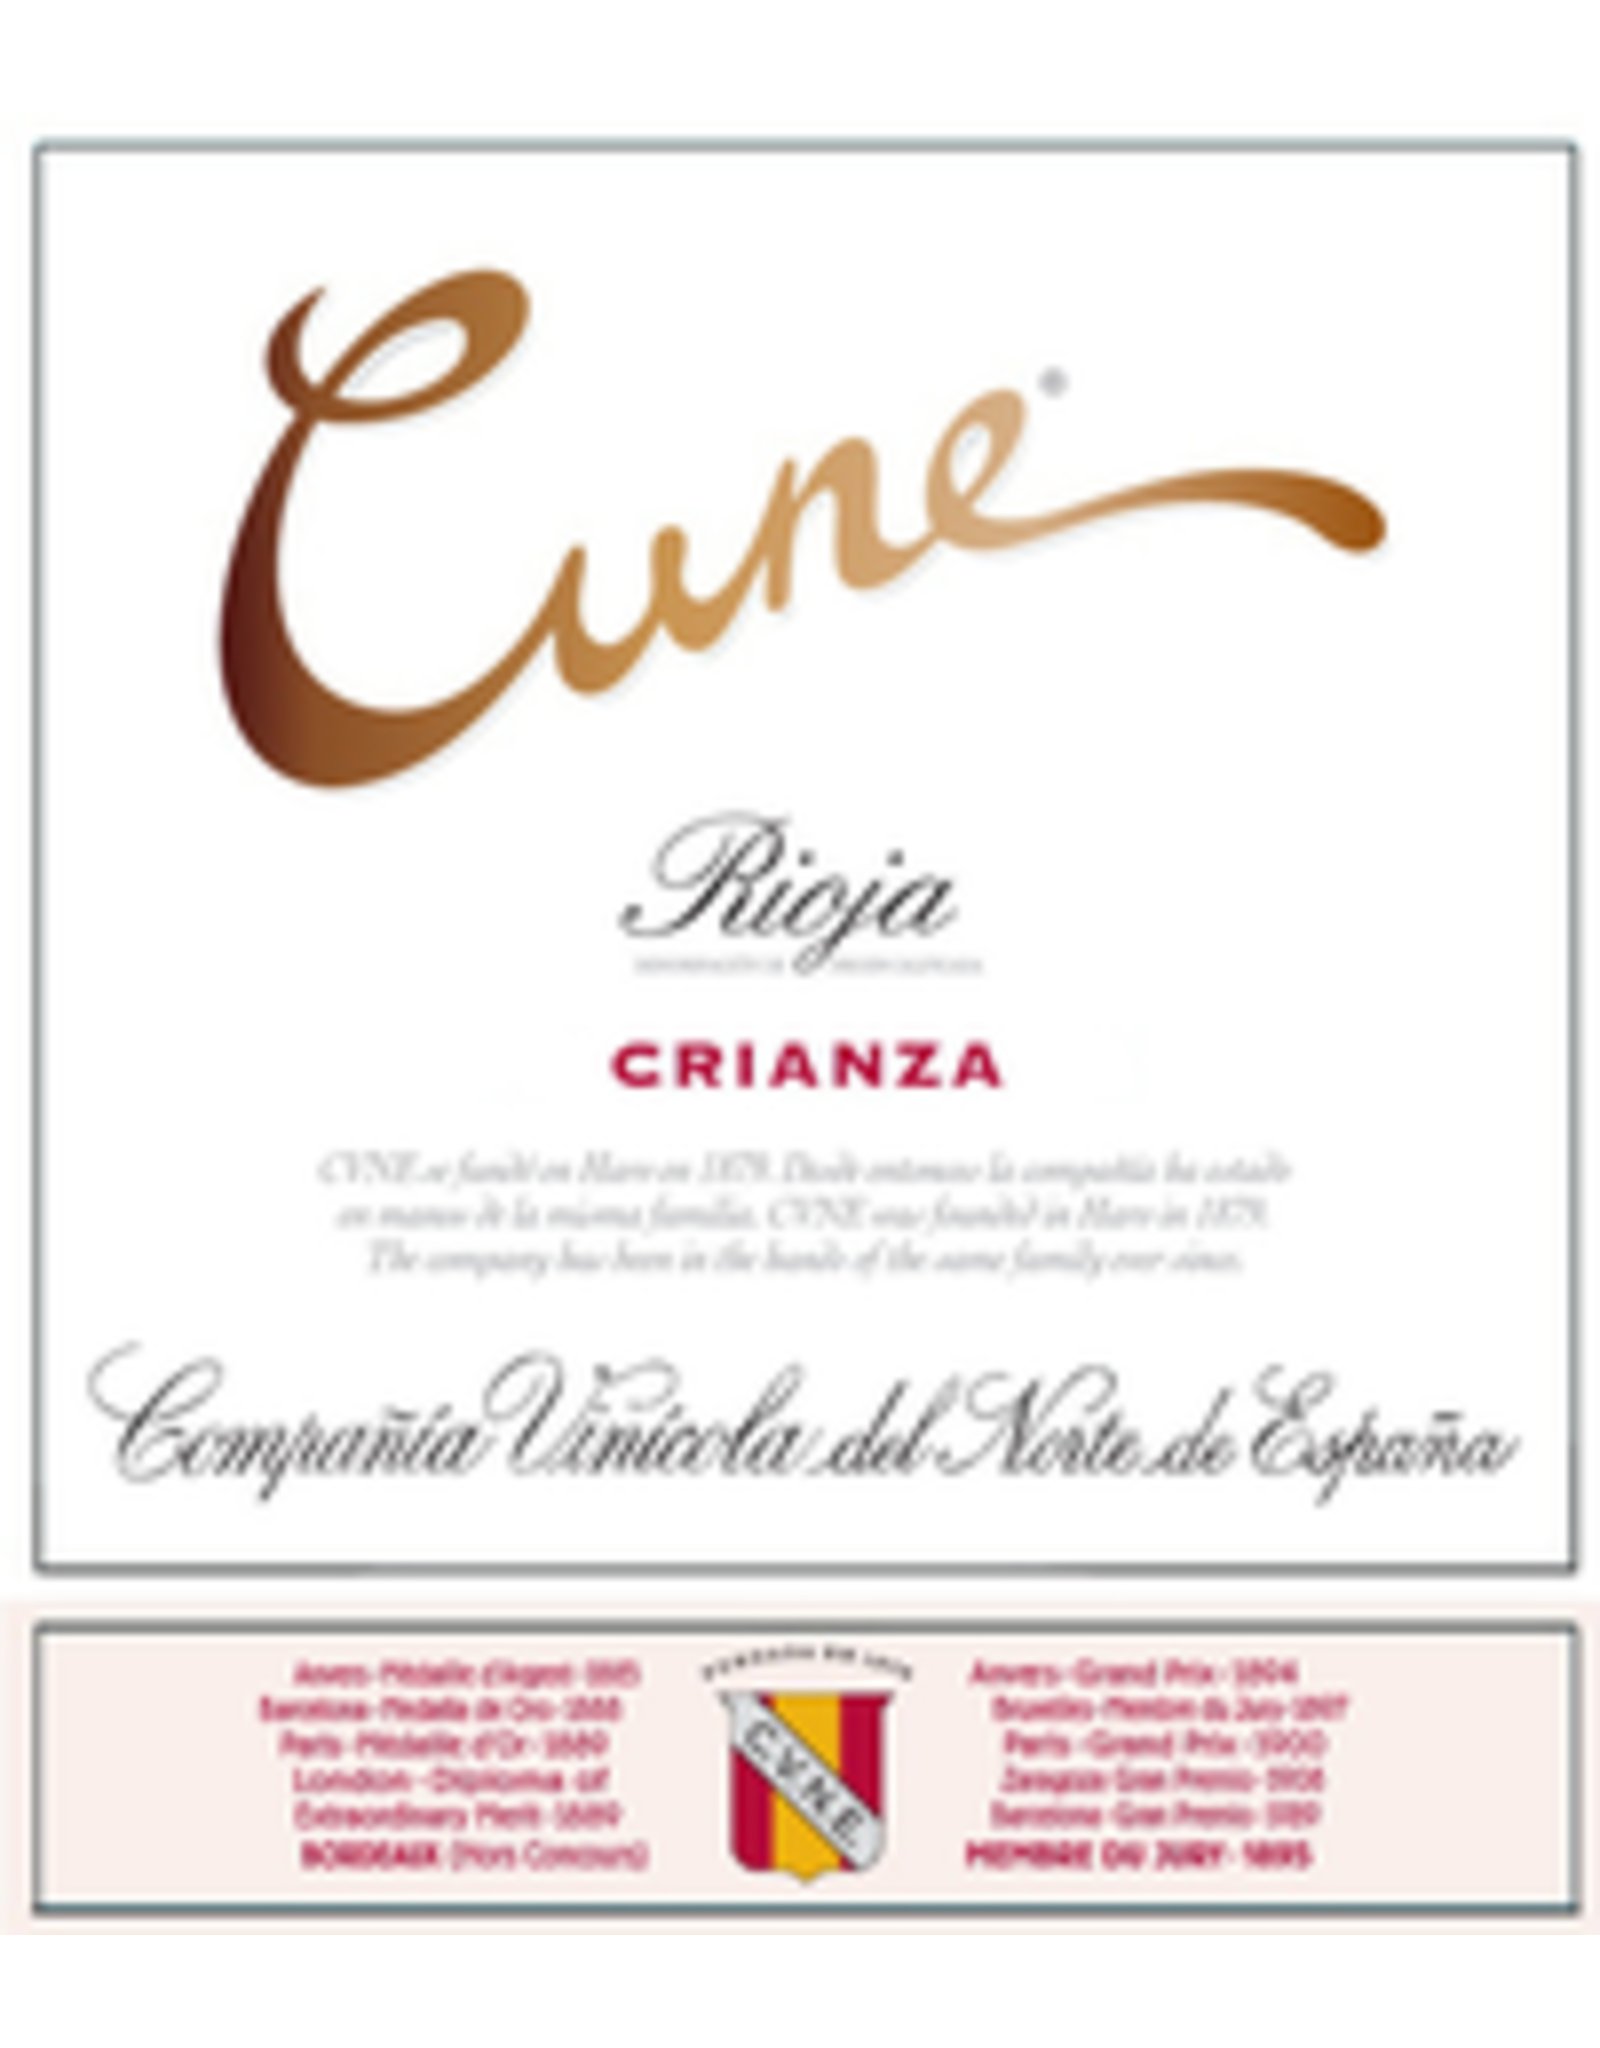 Skurnik Rioja Crianza, CVNE (Cune) 2017